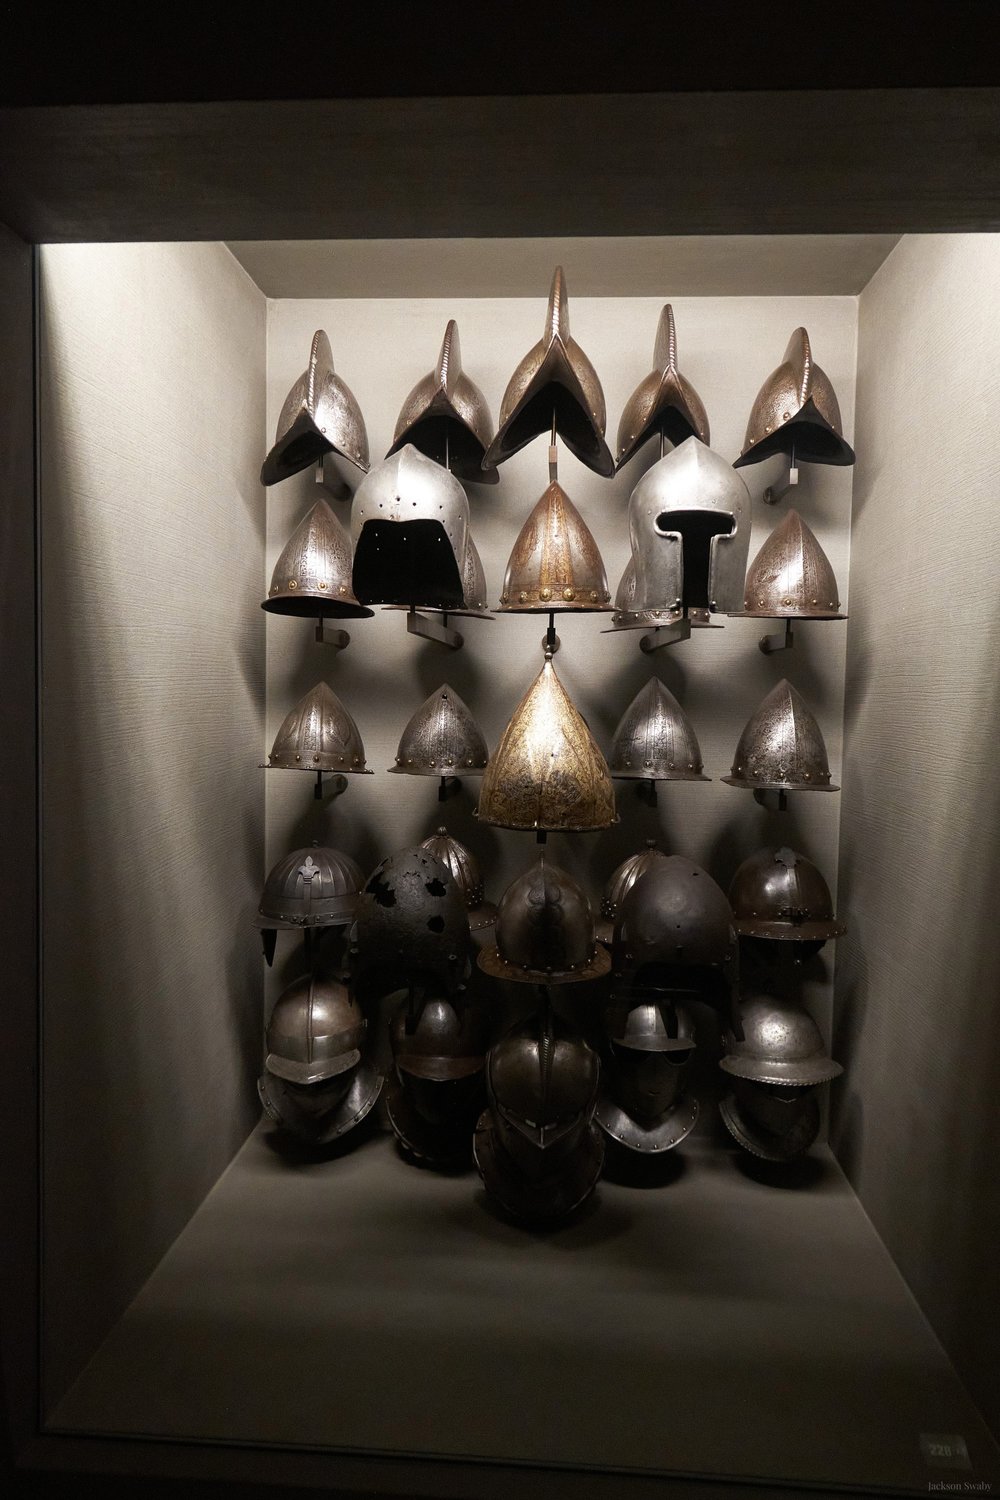 Weaponry &amp; Armour, Museo Poldi Pezzoli - Milan, Italy